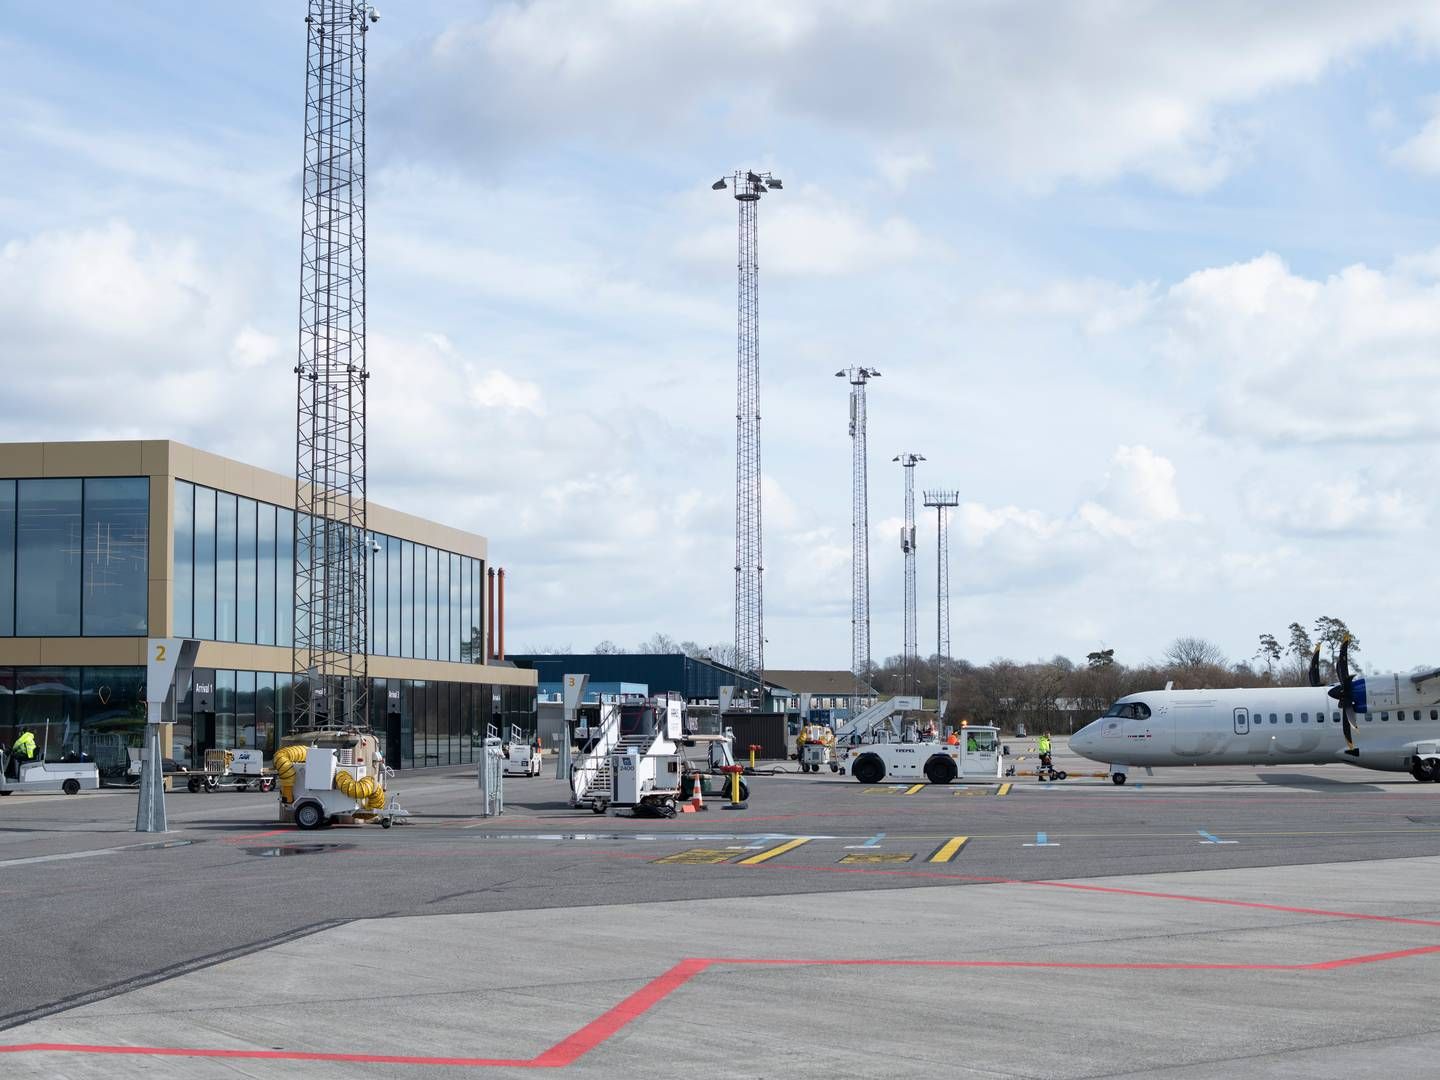 Senest har lufthavnen haft en drøftelse med en mulig udenlandsk partner, men det var ikke det rette match, siger formanden for Aarhus Lufthavn. | Foto: Mads Andreas Frost